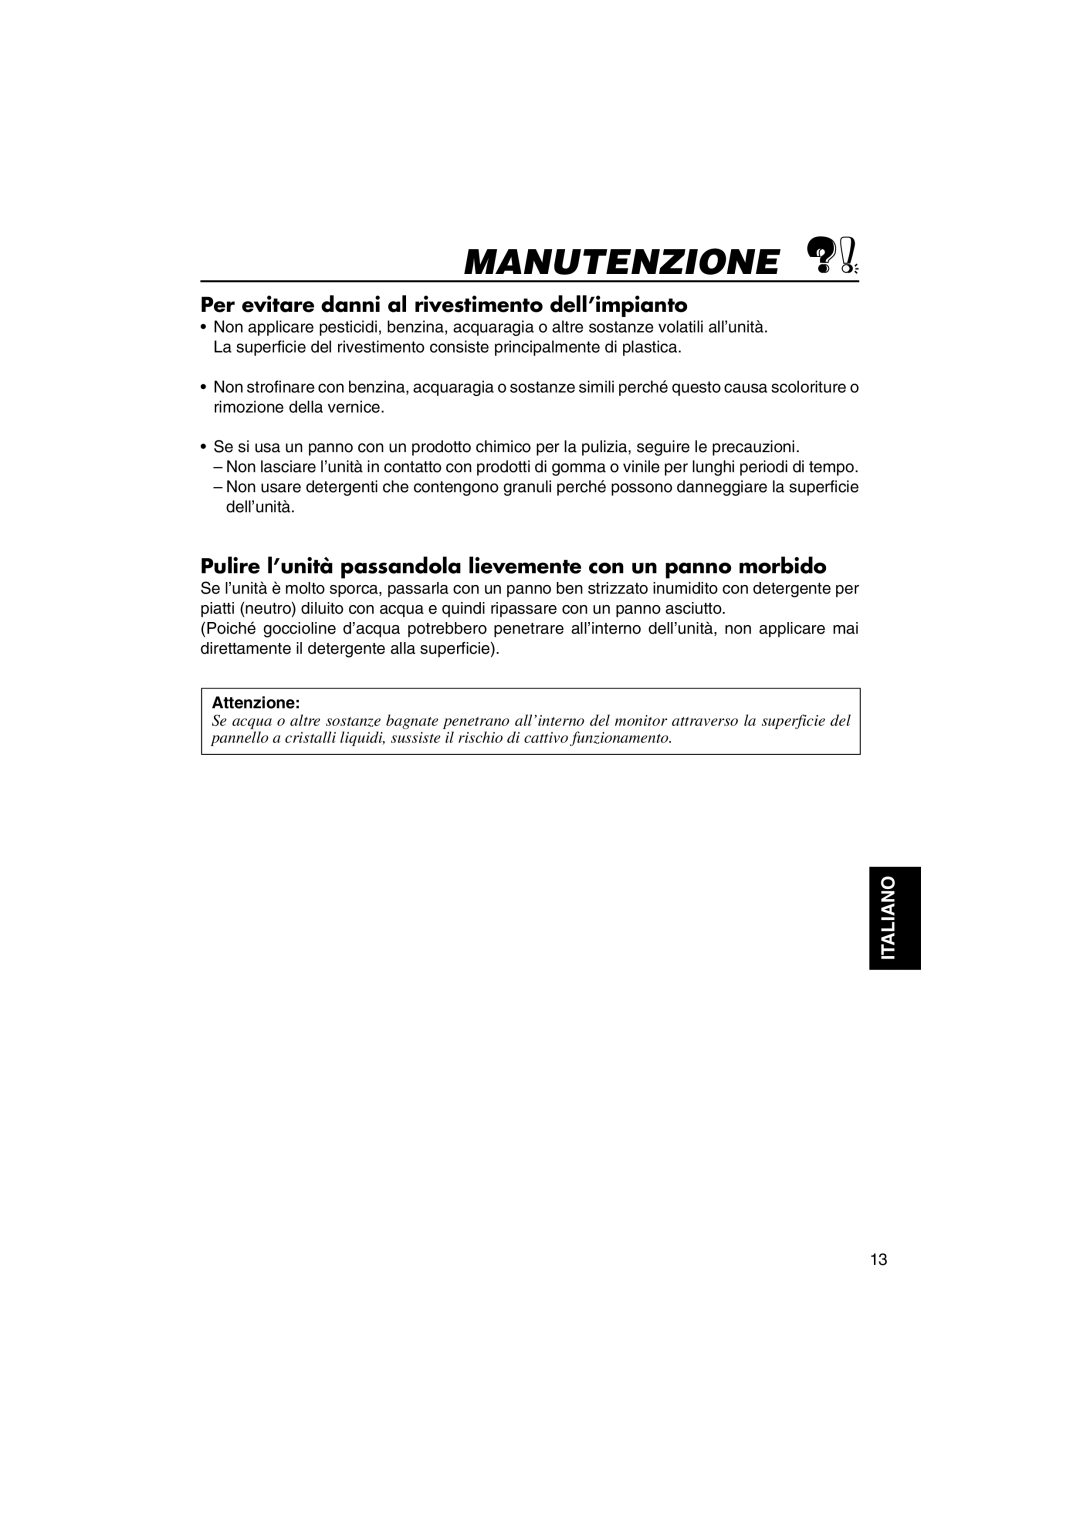 JVC KV-MH6500 manual Manutenzione, Per evitare danni al rivestimento dell’impianto, Attenzione, Italiano 